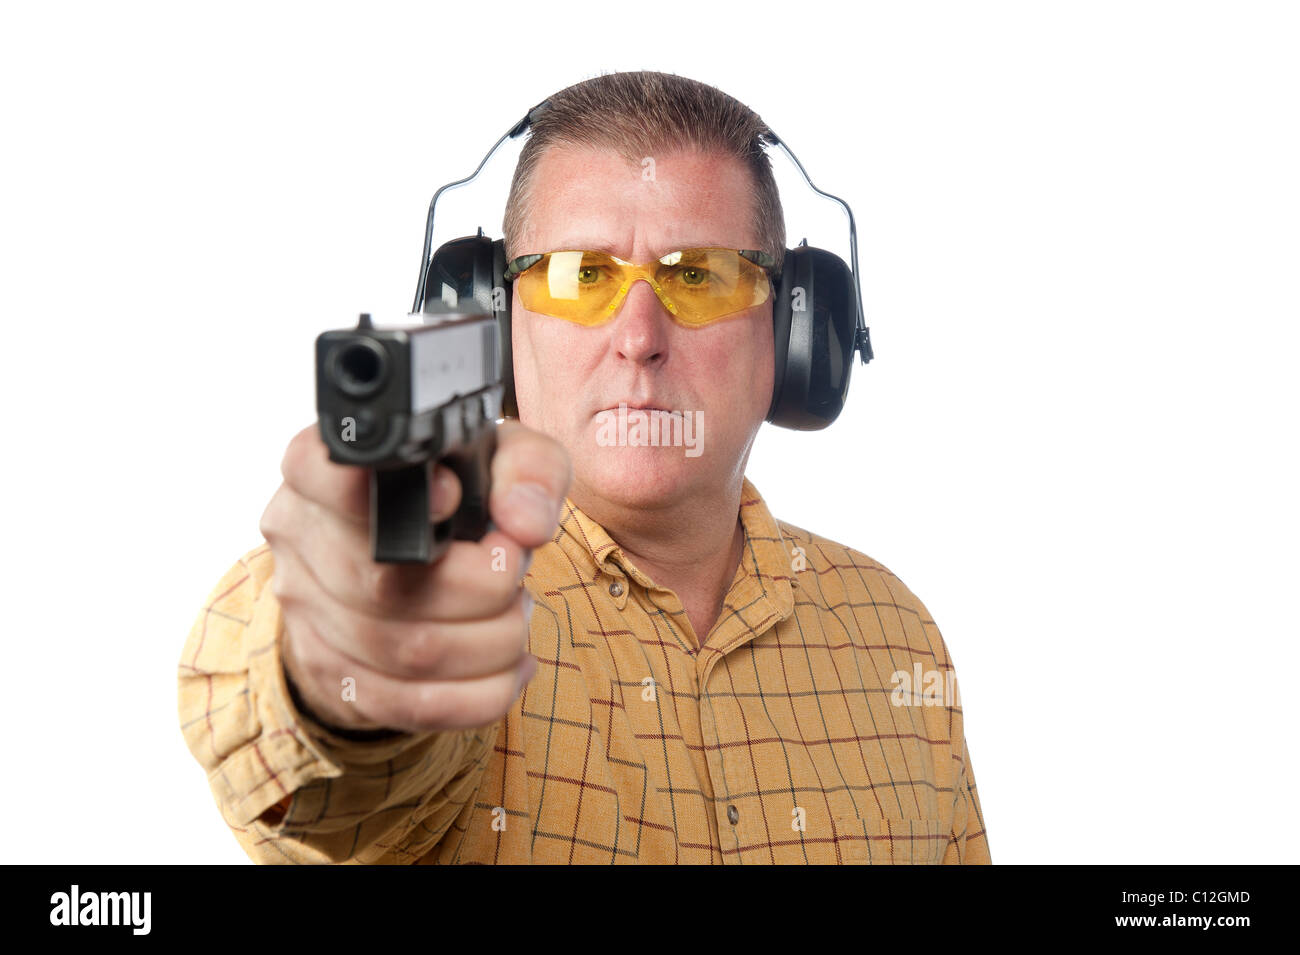 Ein Mann will eine Pistole beim richtigen Sicherheitsausrüstung wie Schutzbrille und Gehörschutz tragen. Stockfoto